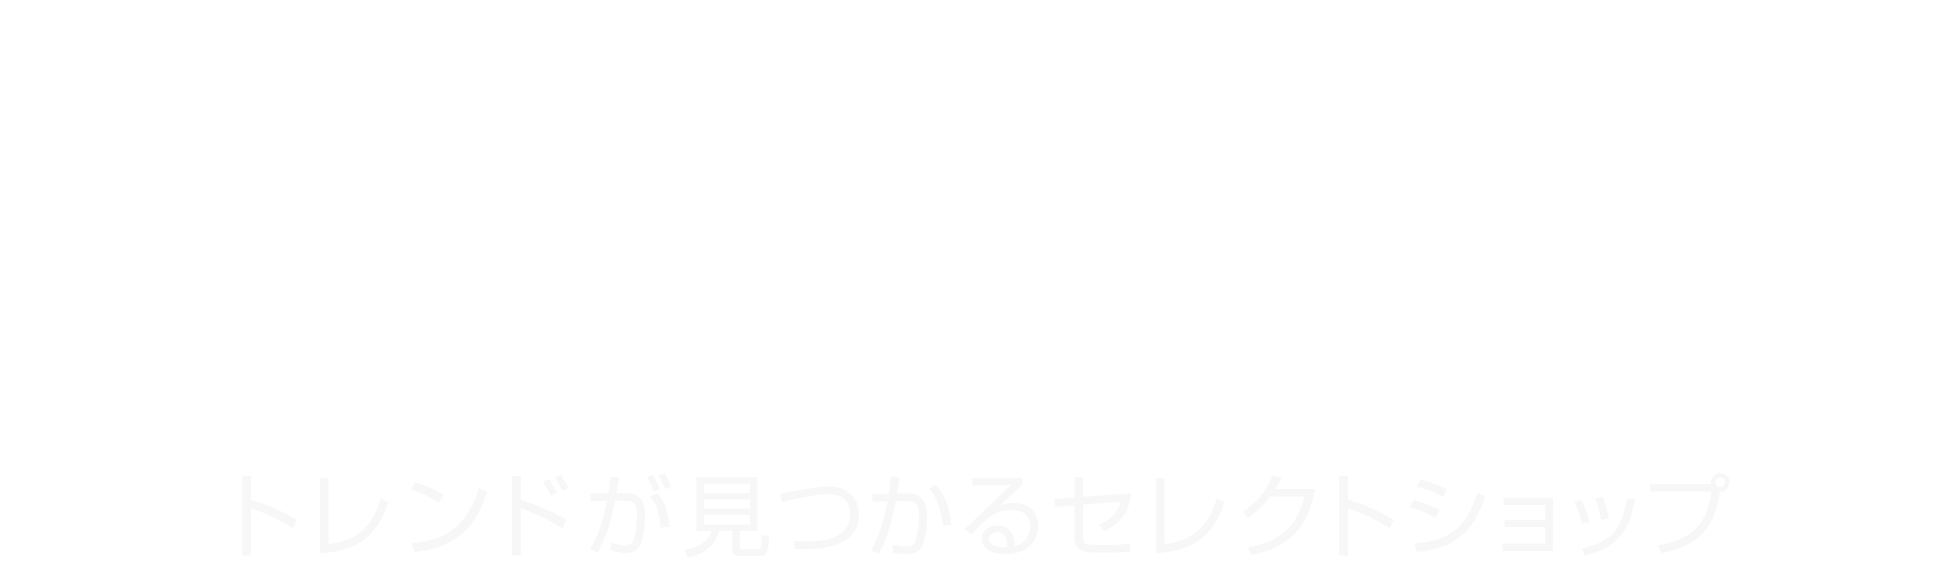 Annasakka-net